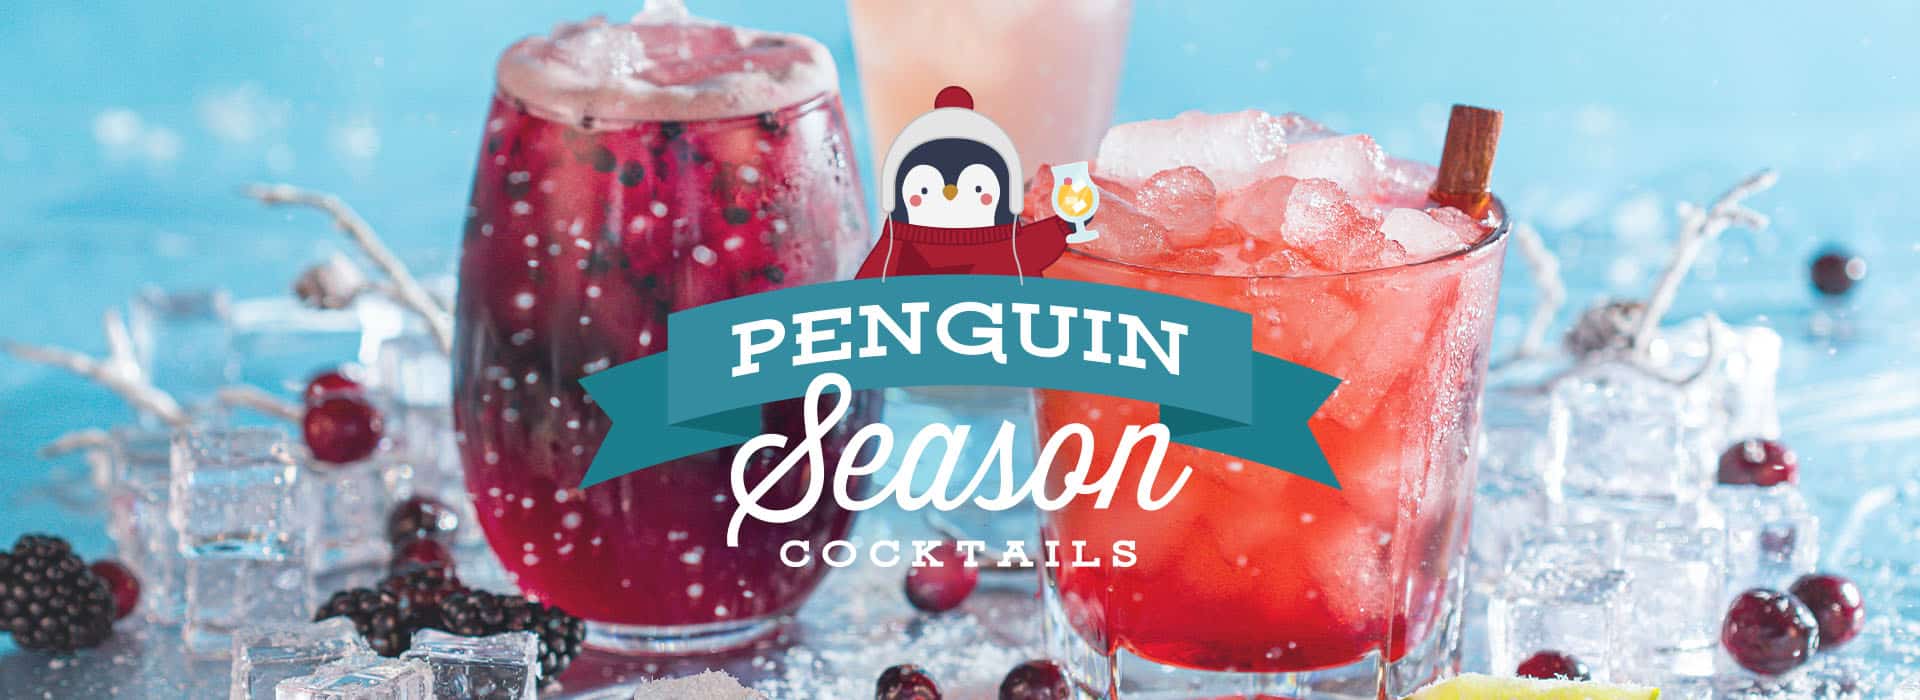 Penguin Season Cocktails